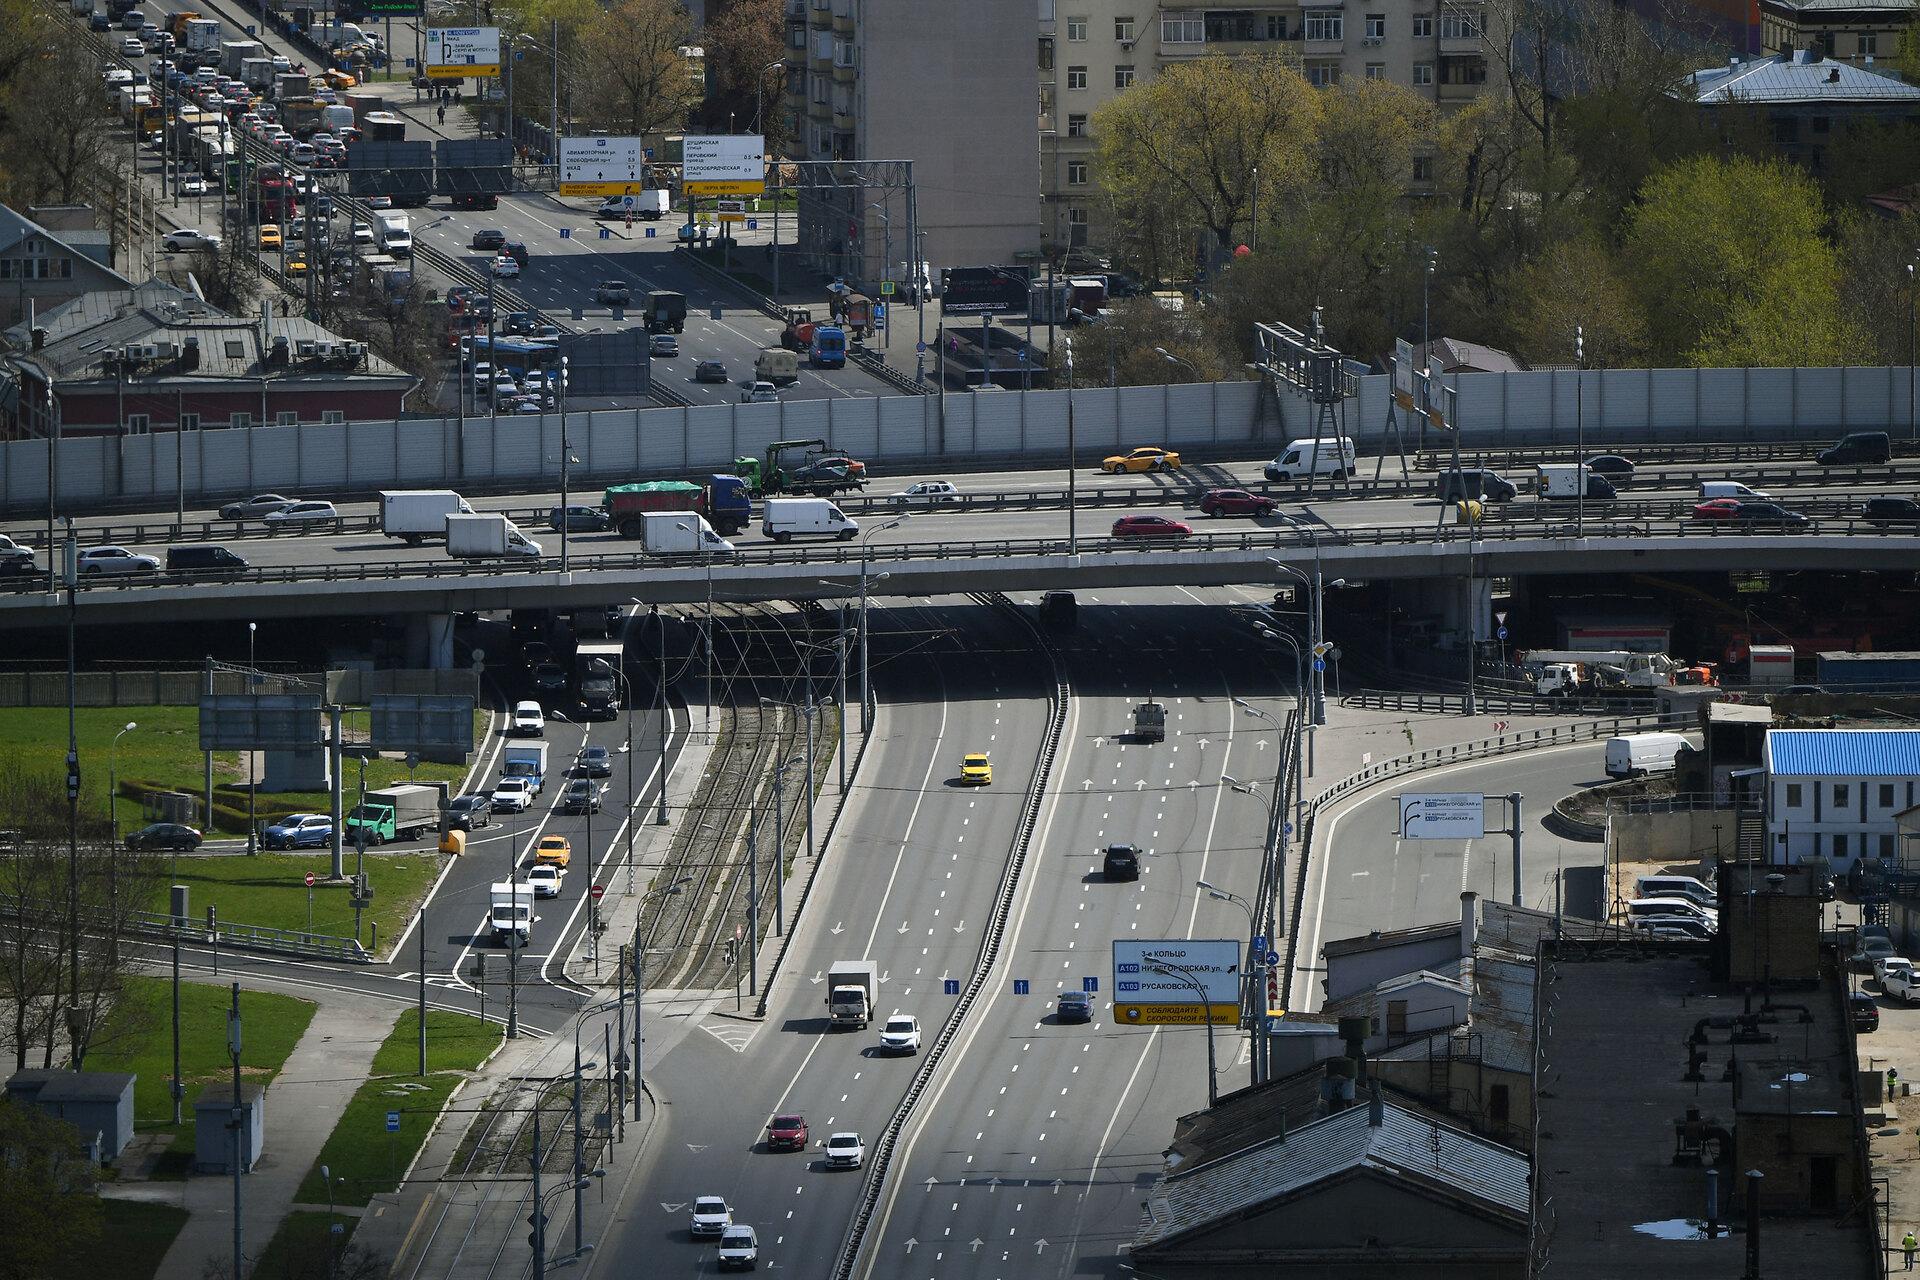 Риа москва. Третье транспортное кольцо. Земли транспорта. Транспорт на дороге. Район третьего транспортного кольца в Москве.